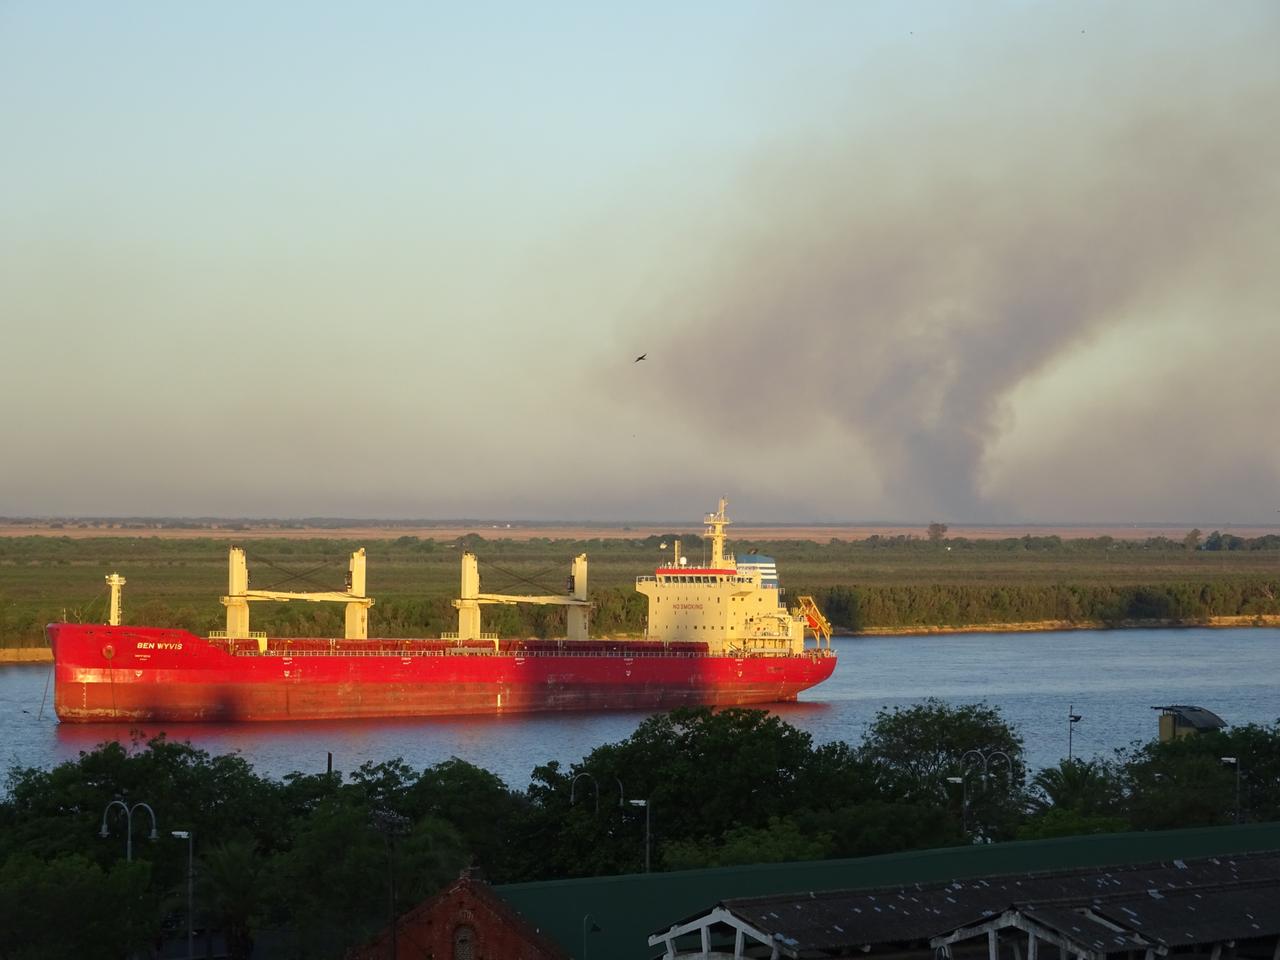 Ein großes Schiff auf einem Fluss bläst dunklen Rauch in die Luft